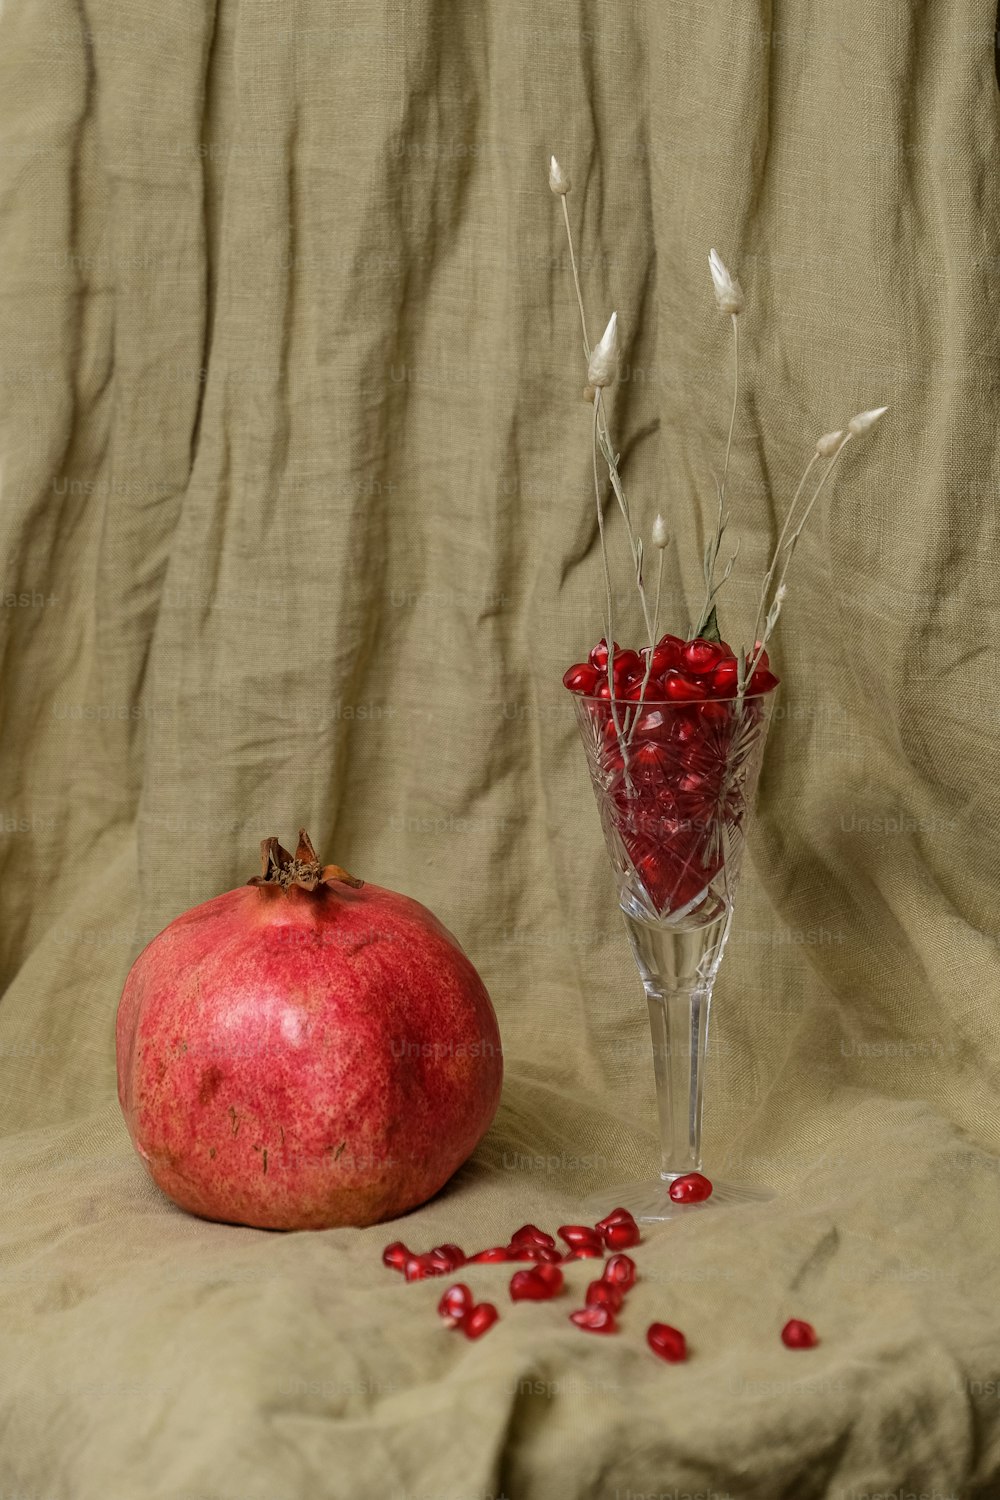 Une grenade assise à côté d’un vase en verre rempli de pomegra